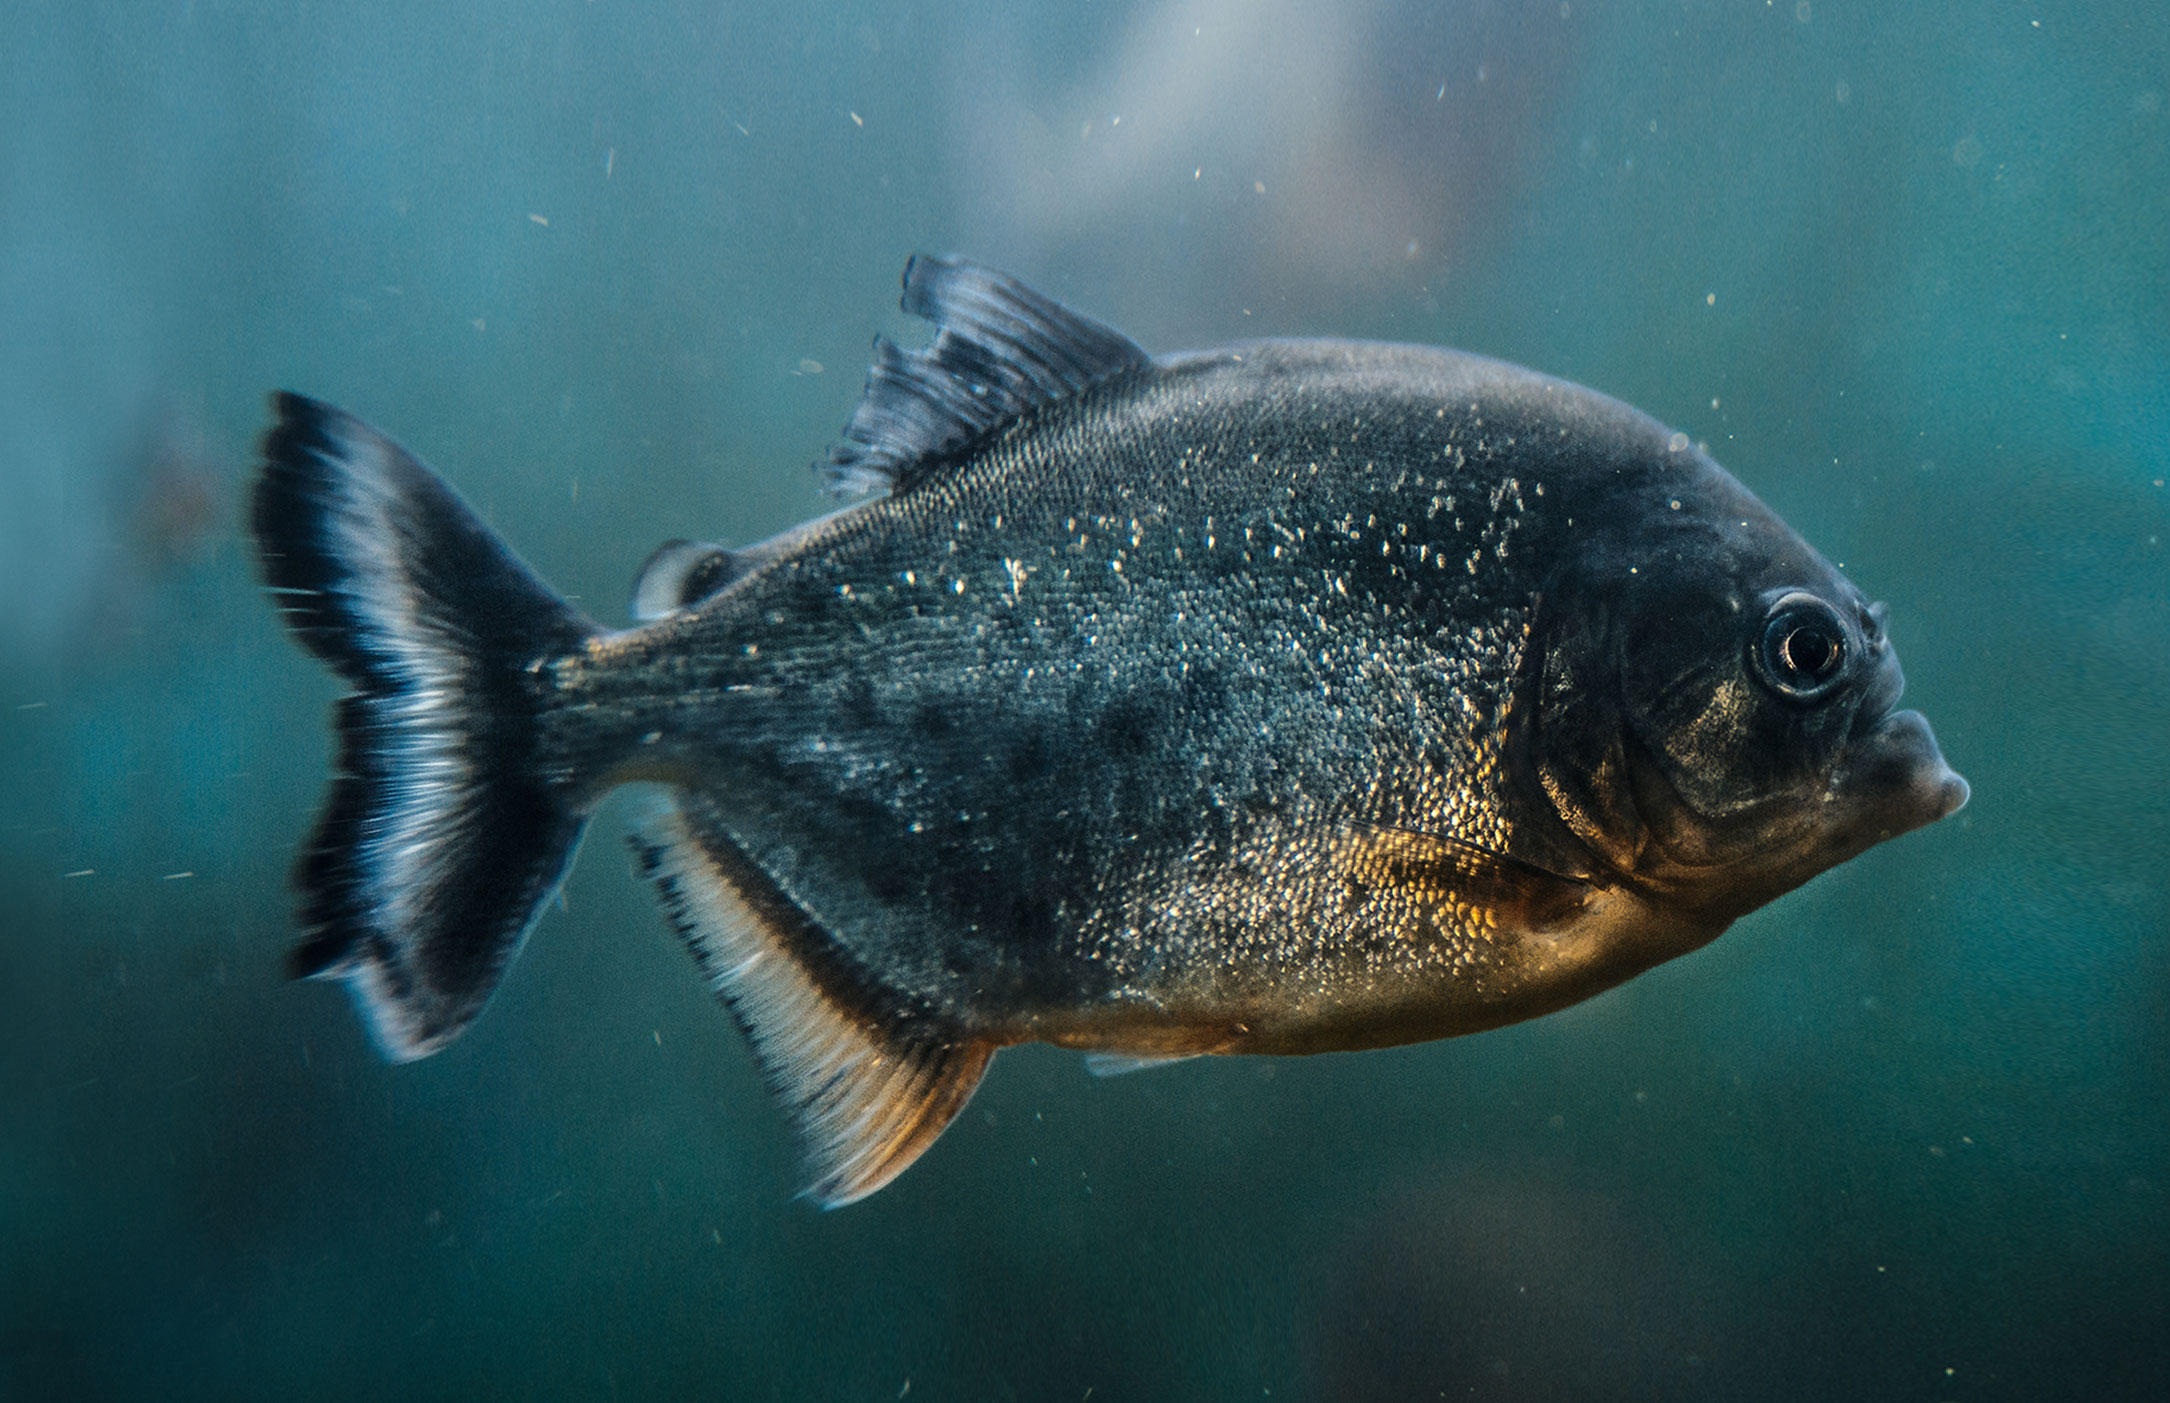 Preferências e recetividade de “novos” peixes: variabilidade do género e das habilitações literárias (2016)